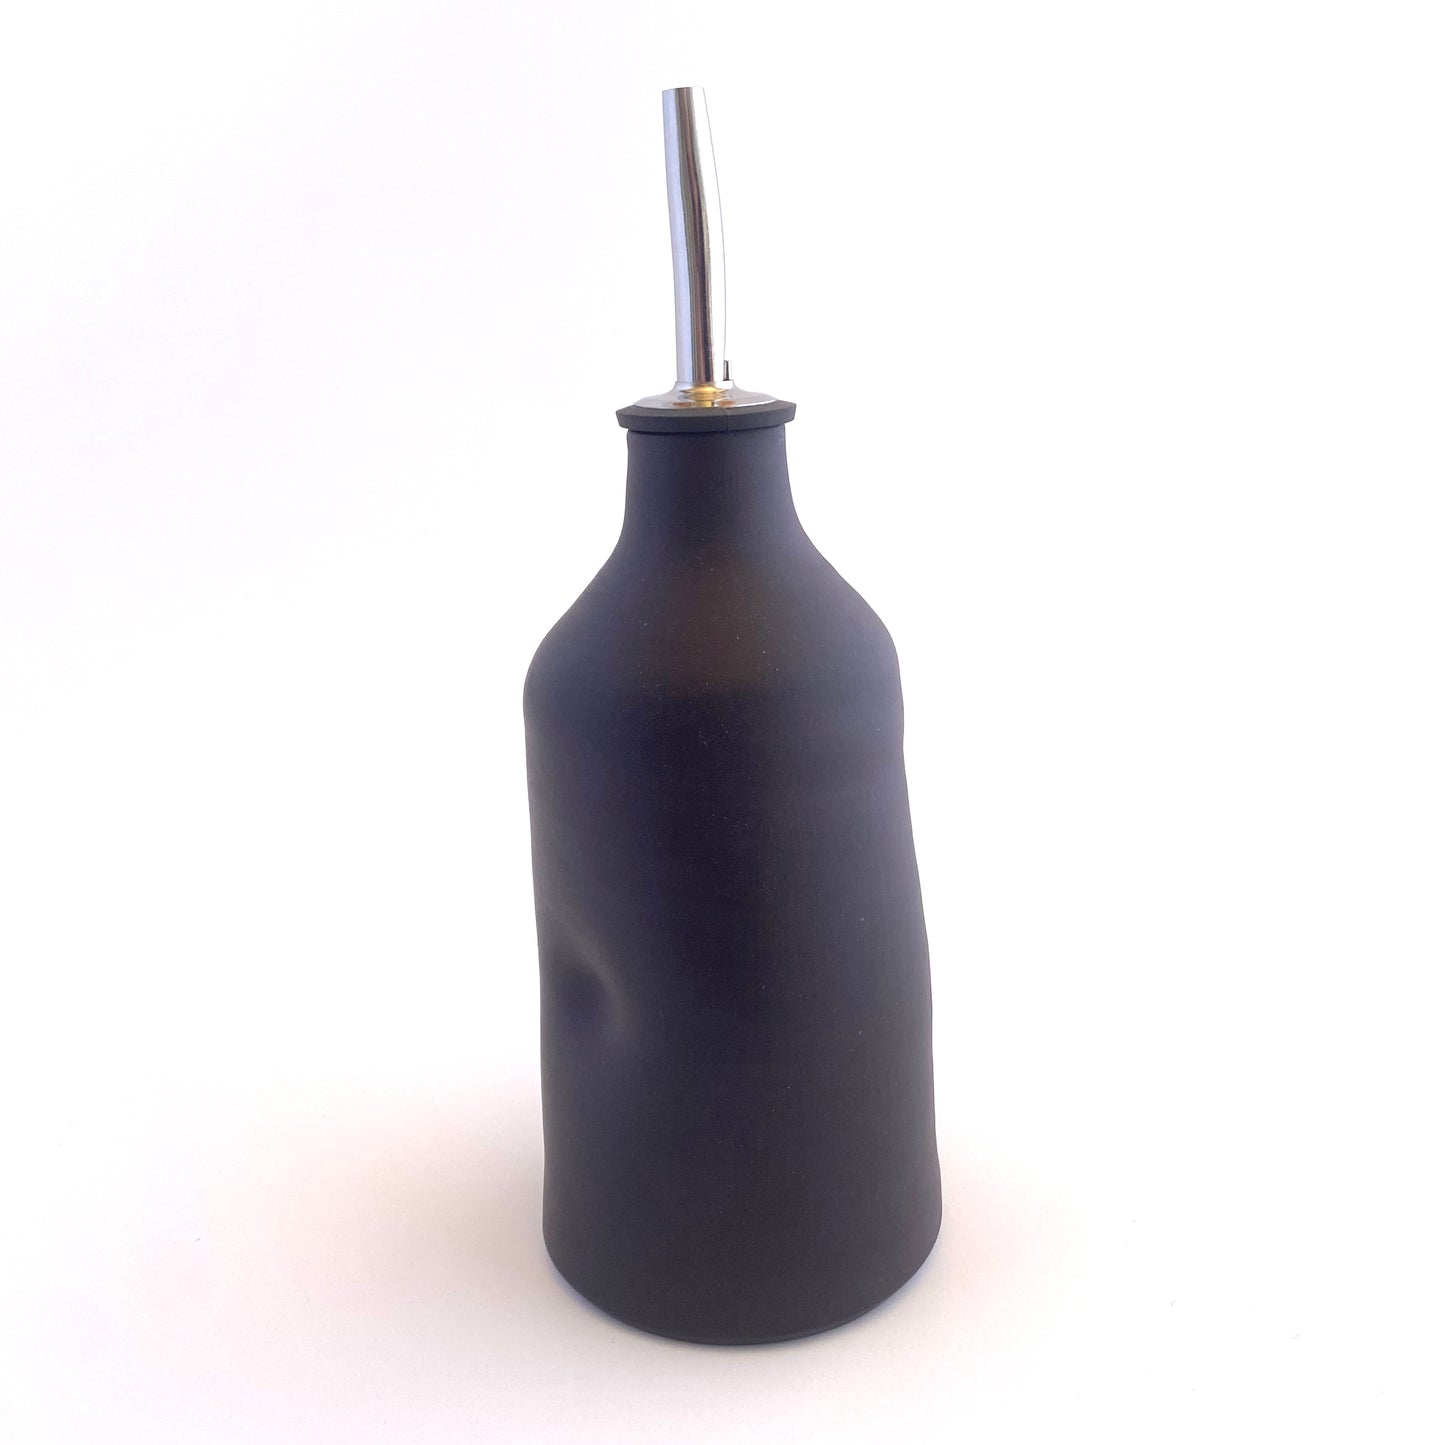 Imprint Olive Oil Vessel in Matte Black